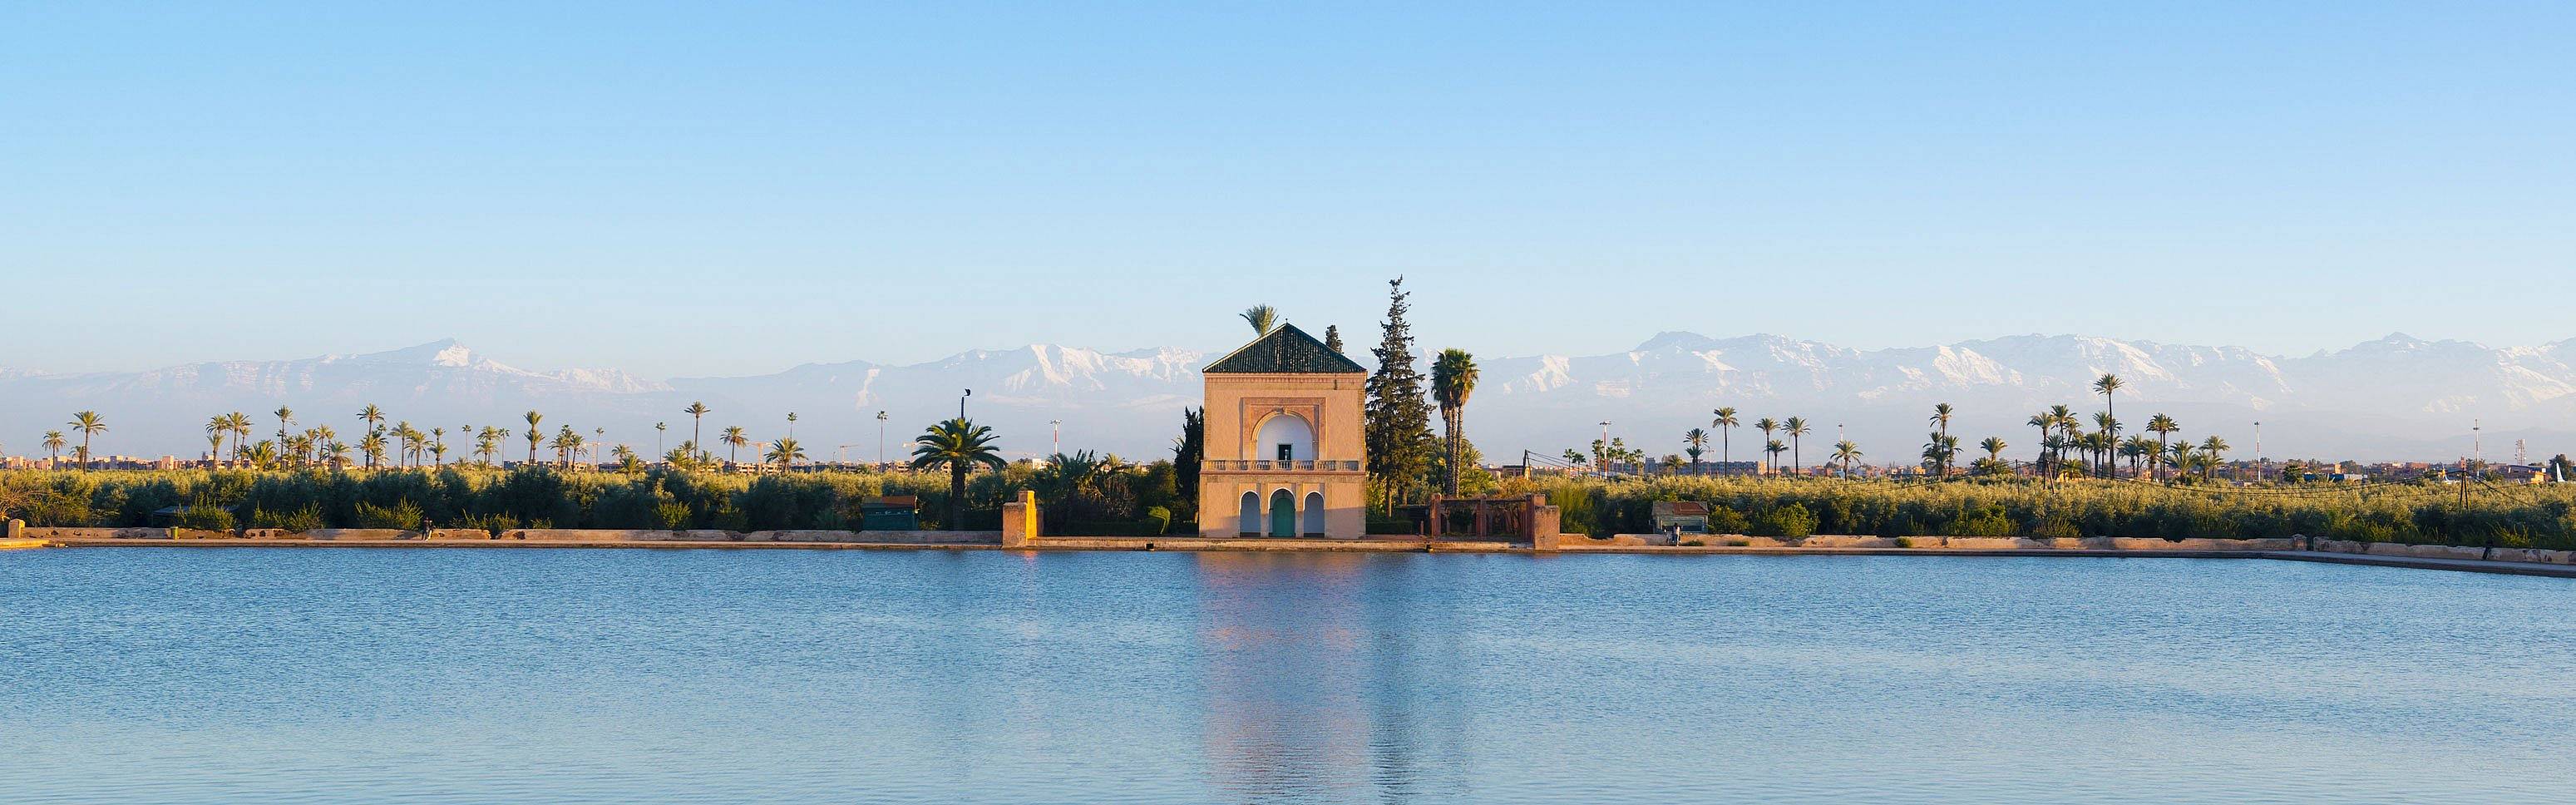 Giardini Menara e montagne dell'Atlante, Marrakech